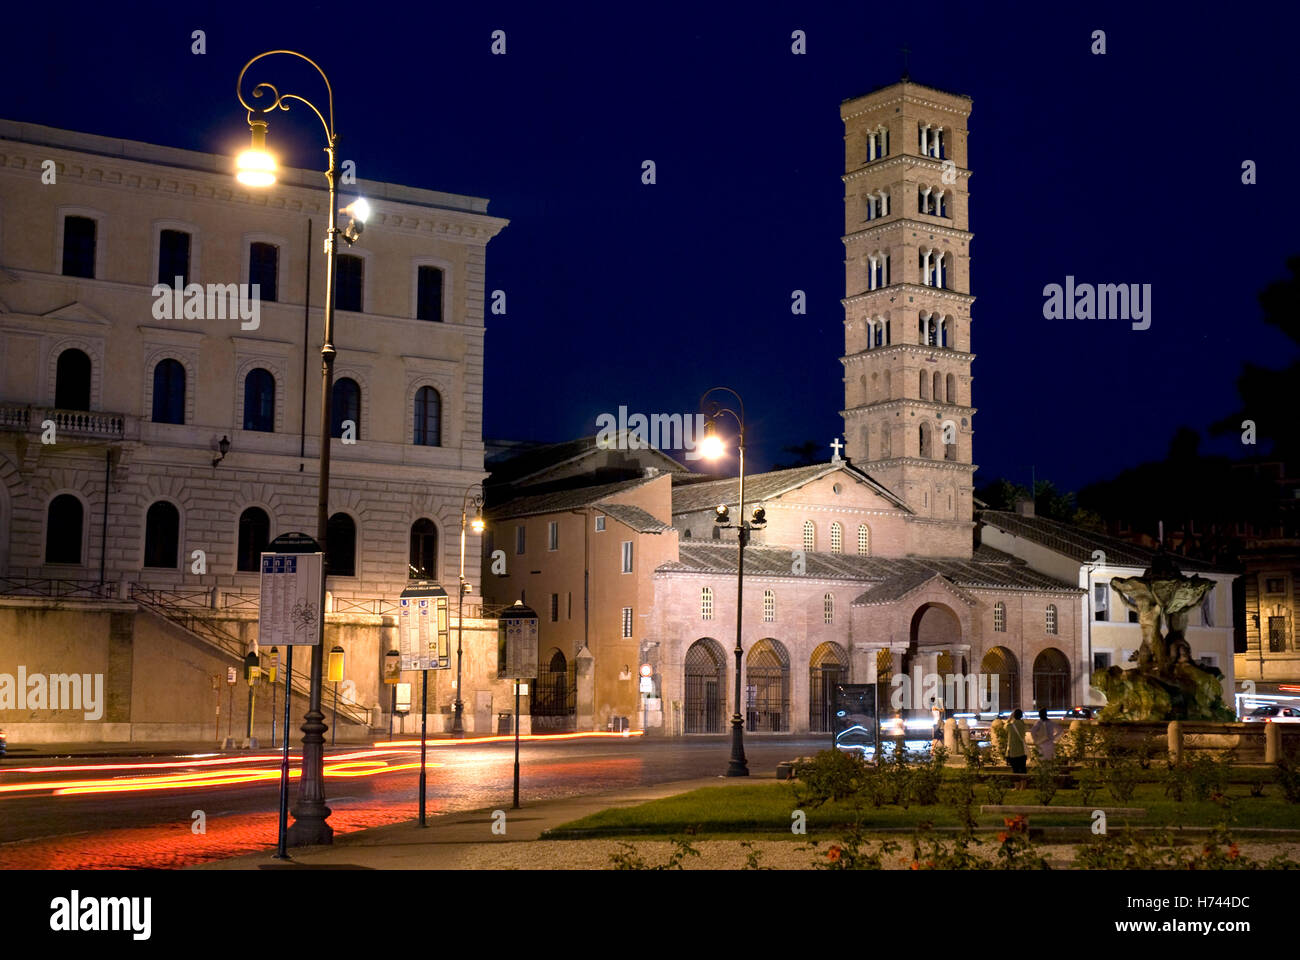 Church of Santa Maria in Cosmedin, Piazza Bocca della Verita, Rome, Italy, Europe Stock Photo